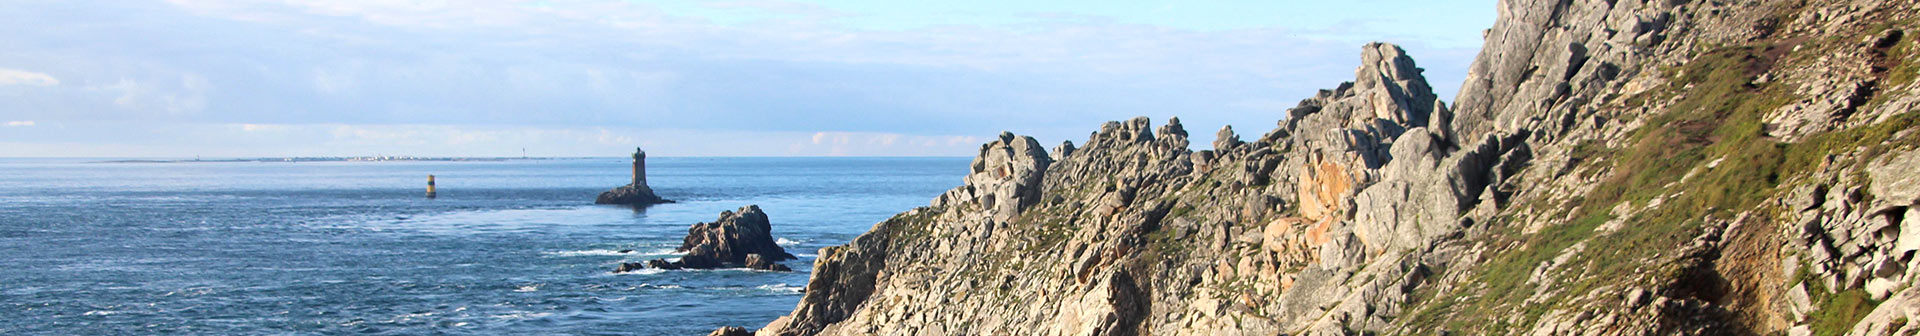 La Pointe du Raz, site exceptionnel et touristique en Bretagne